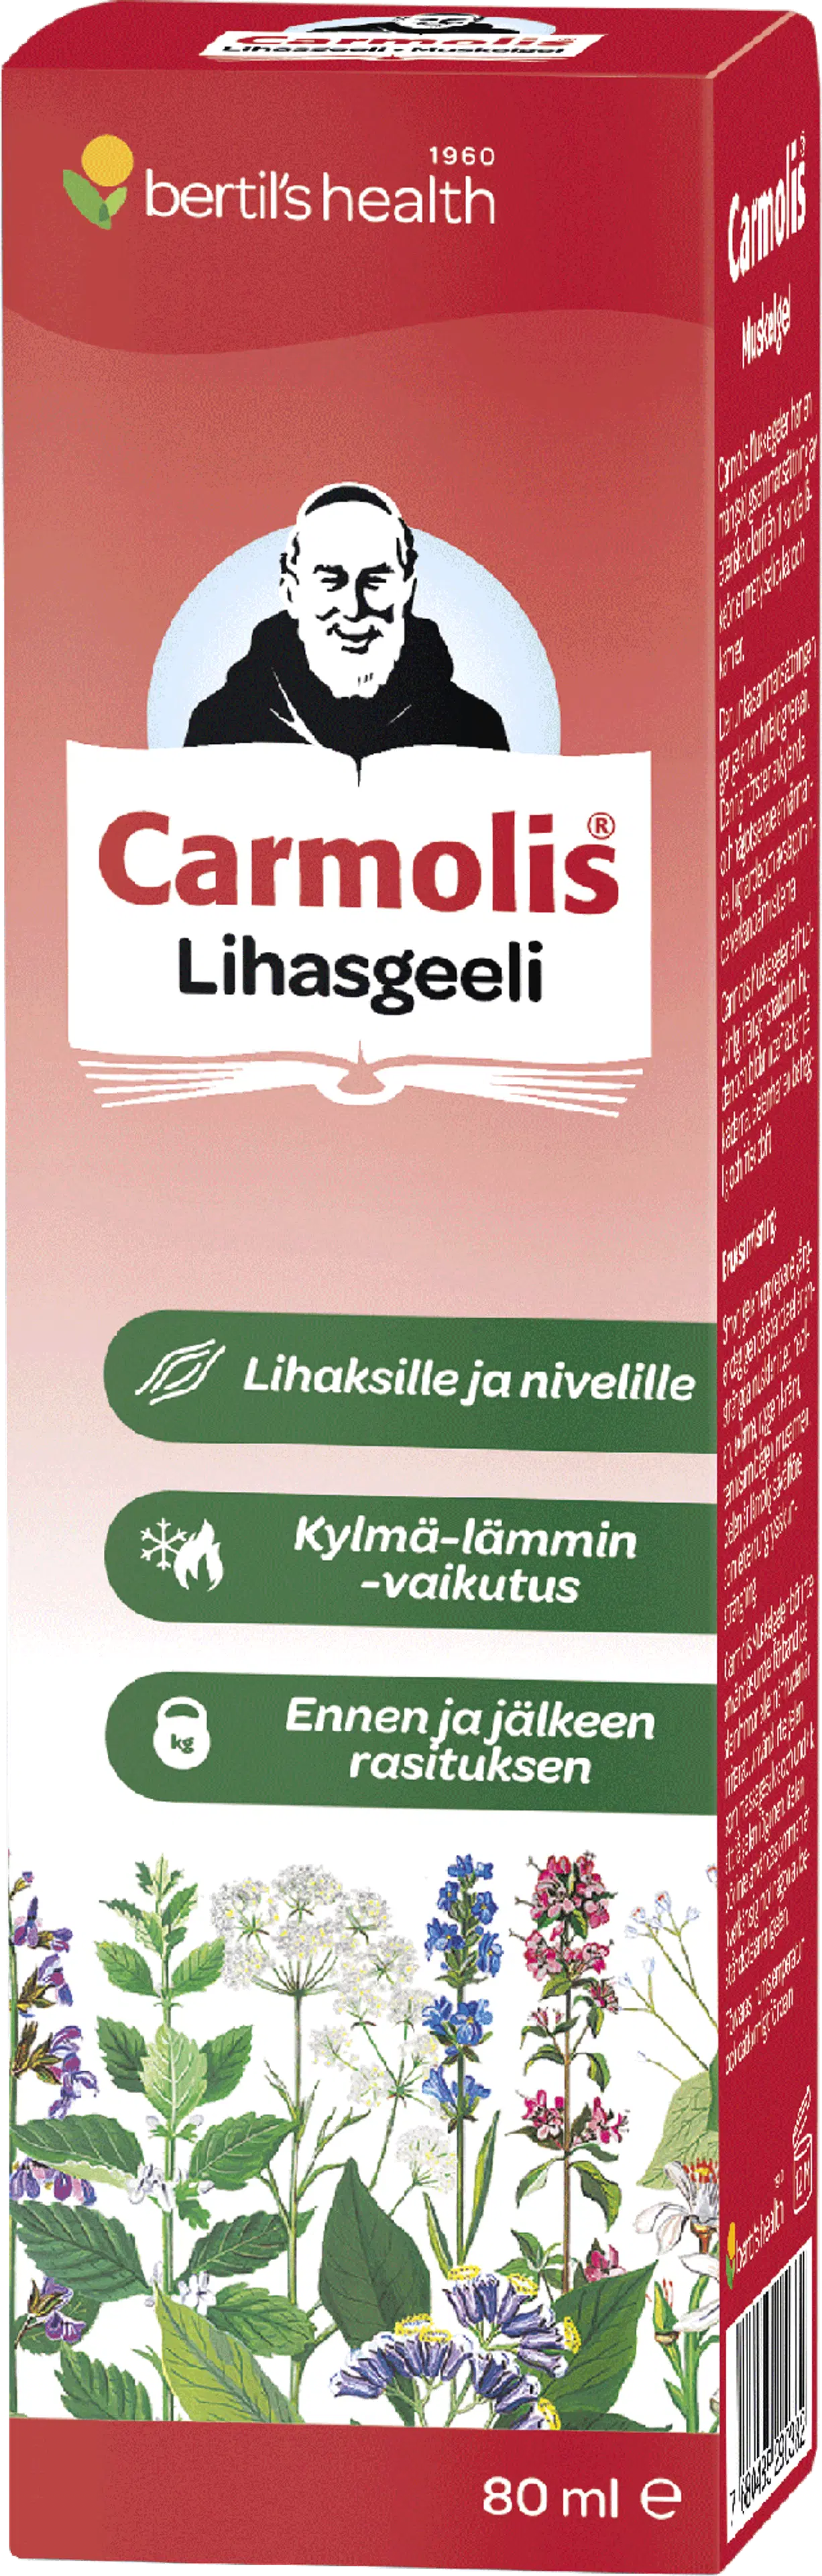 bertil´s health Carmolis lihasgeeli 80 ml